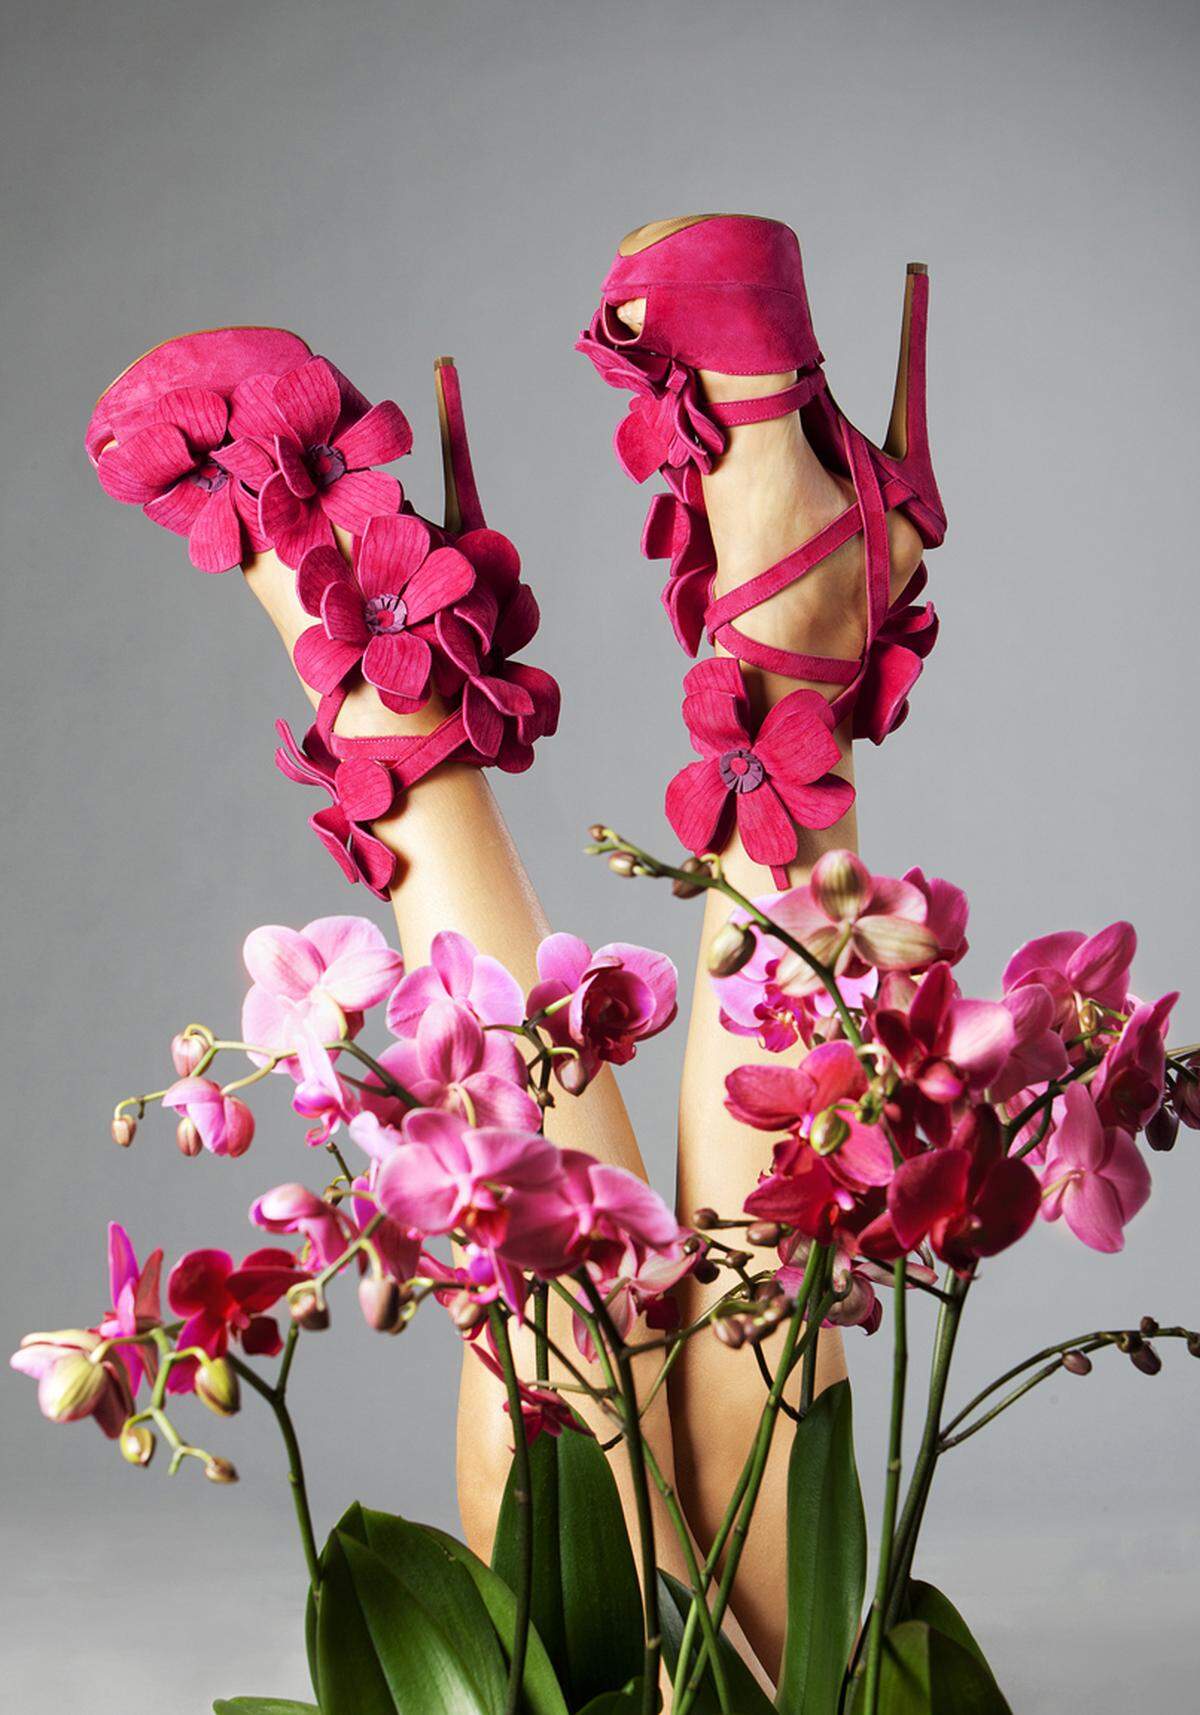 In einem Strauß Orchideen kommen diese High-Heels besonders gut zur Geltung. Jan Jansen, "Orchid Shoe", Niederlande 2013.